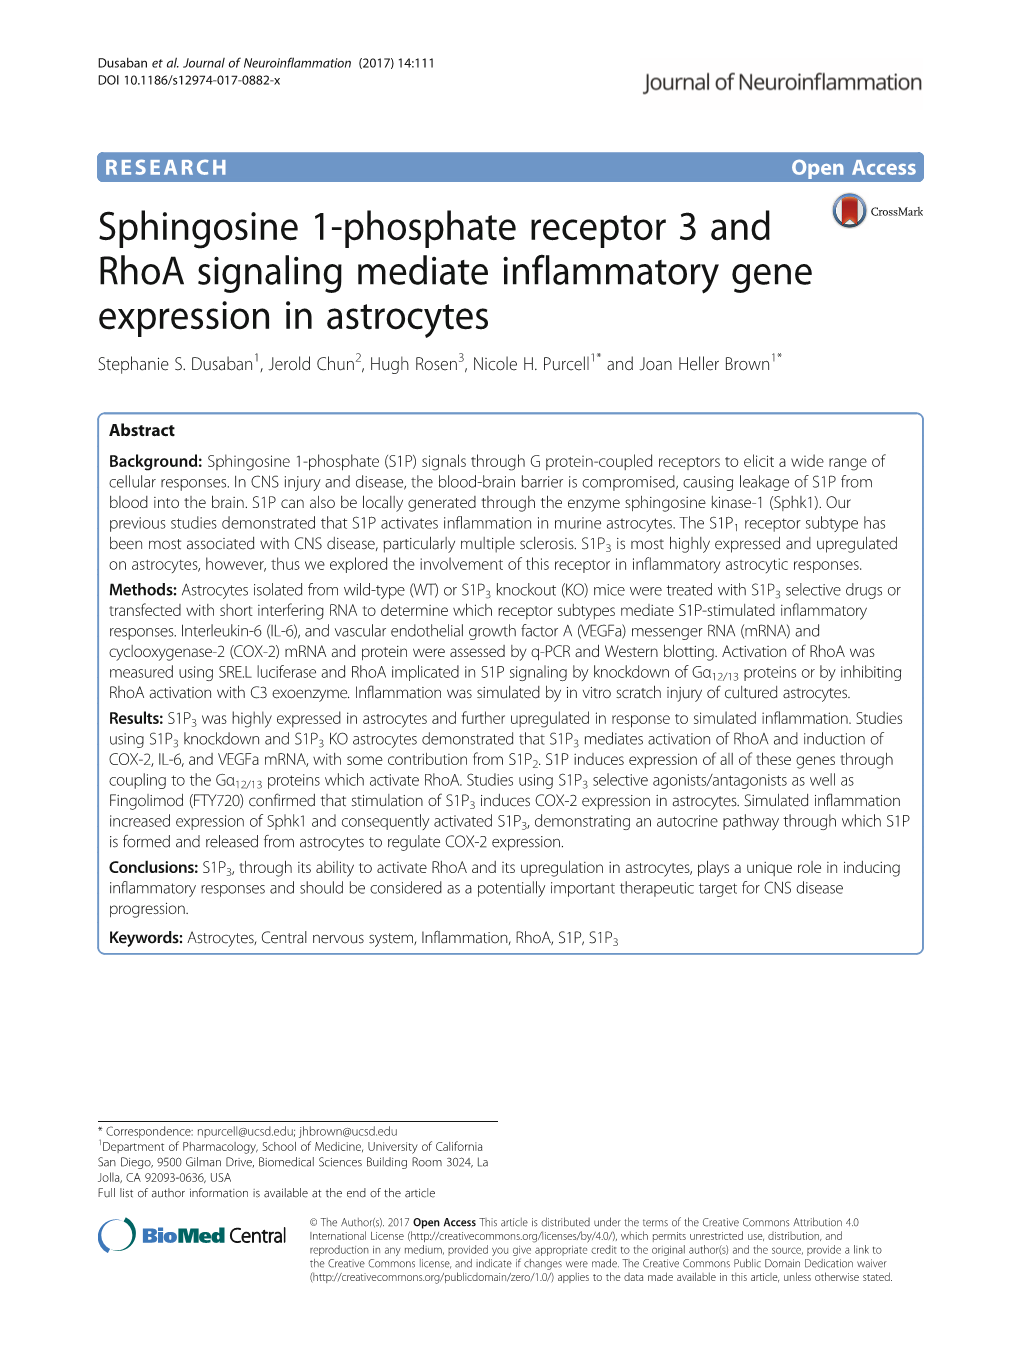 Sphingosine 1-Phosphate Receptor 3 and Rhoa Signaling Mediate Inflammatory Gene Expression in Astrocytes Stephanie S